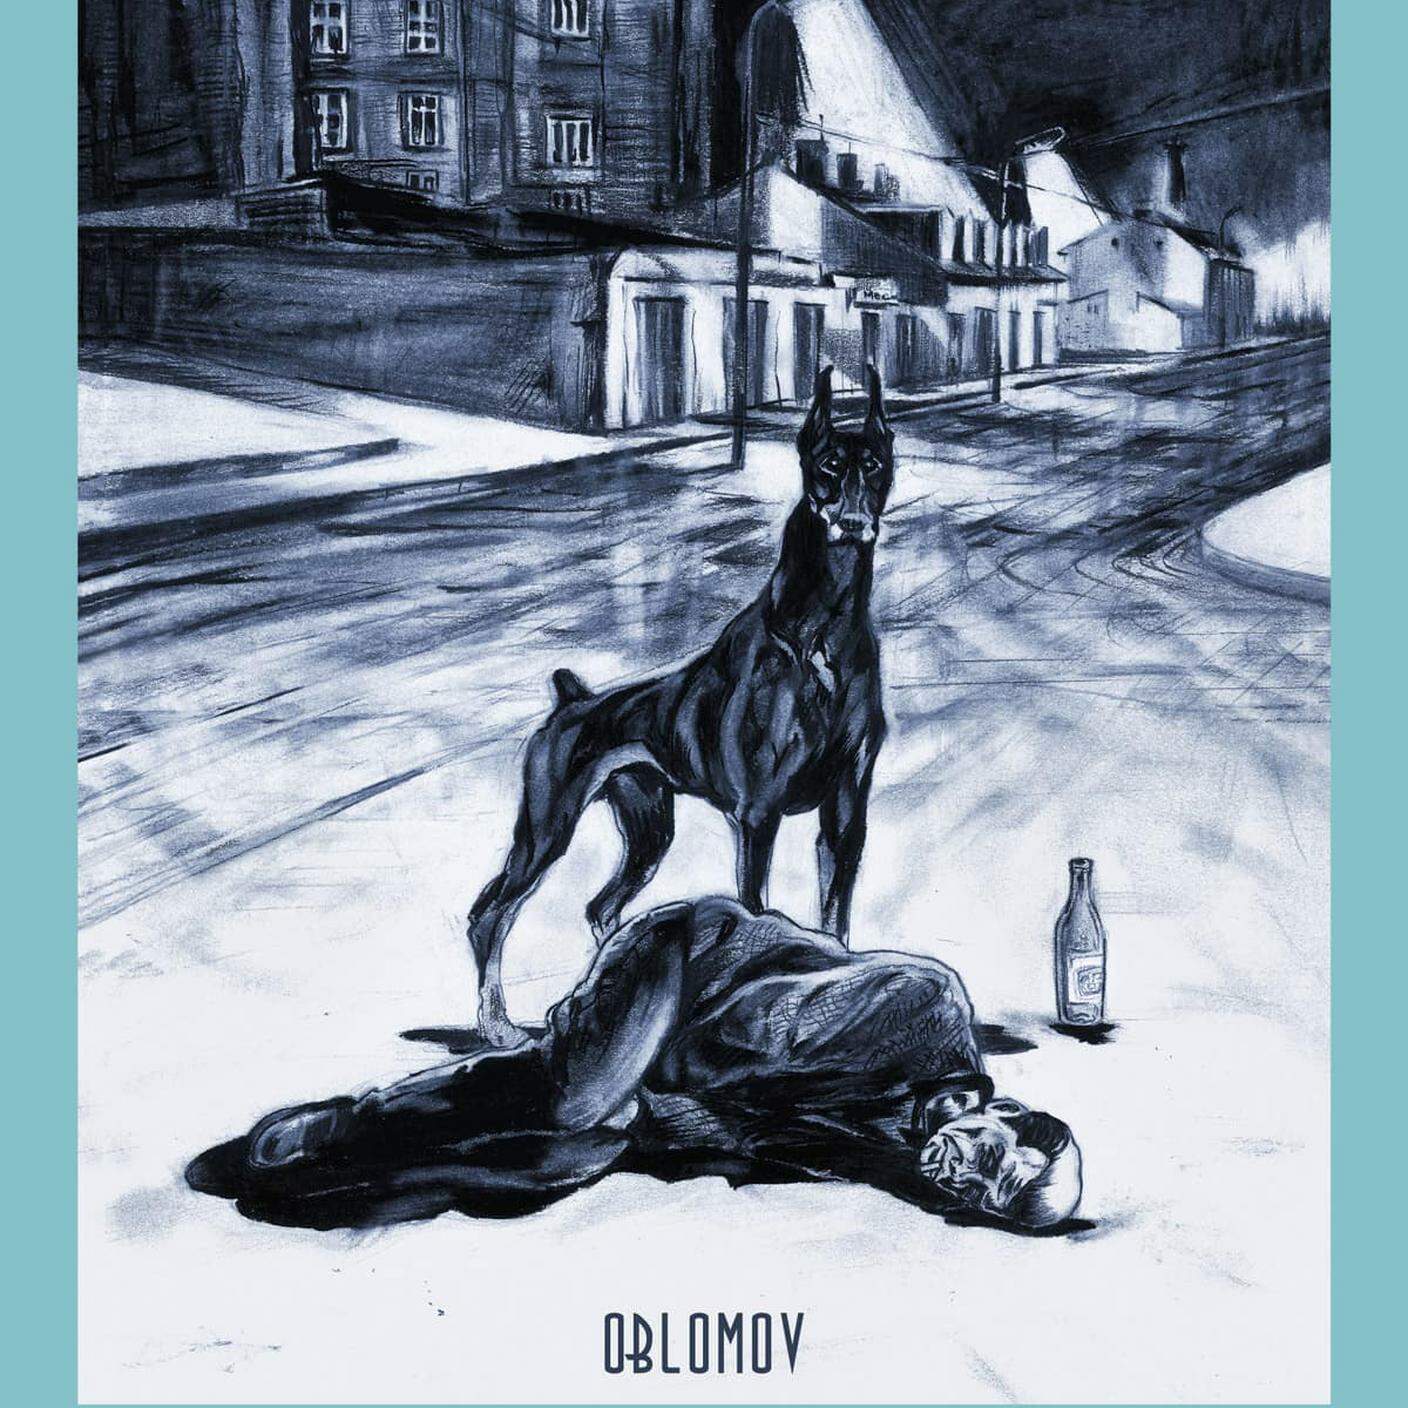 Fabio Izzo, "Uccidendo il secondo cane", Oblomov (dettaglio copertina)